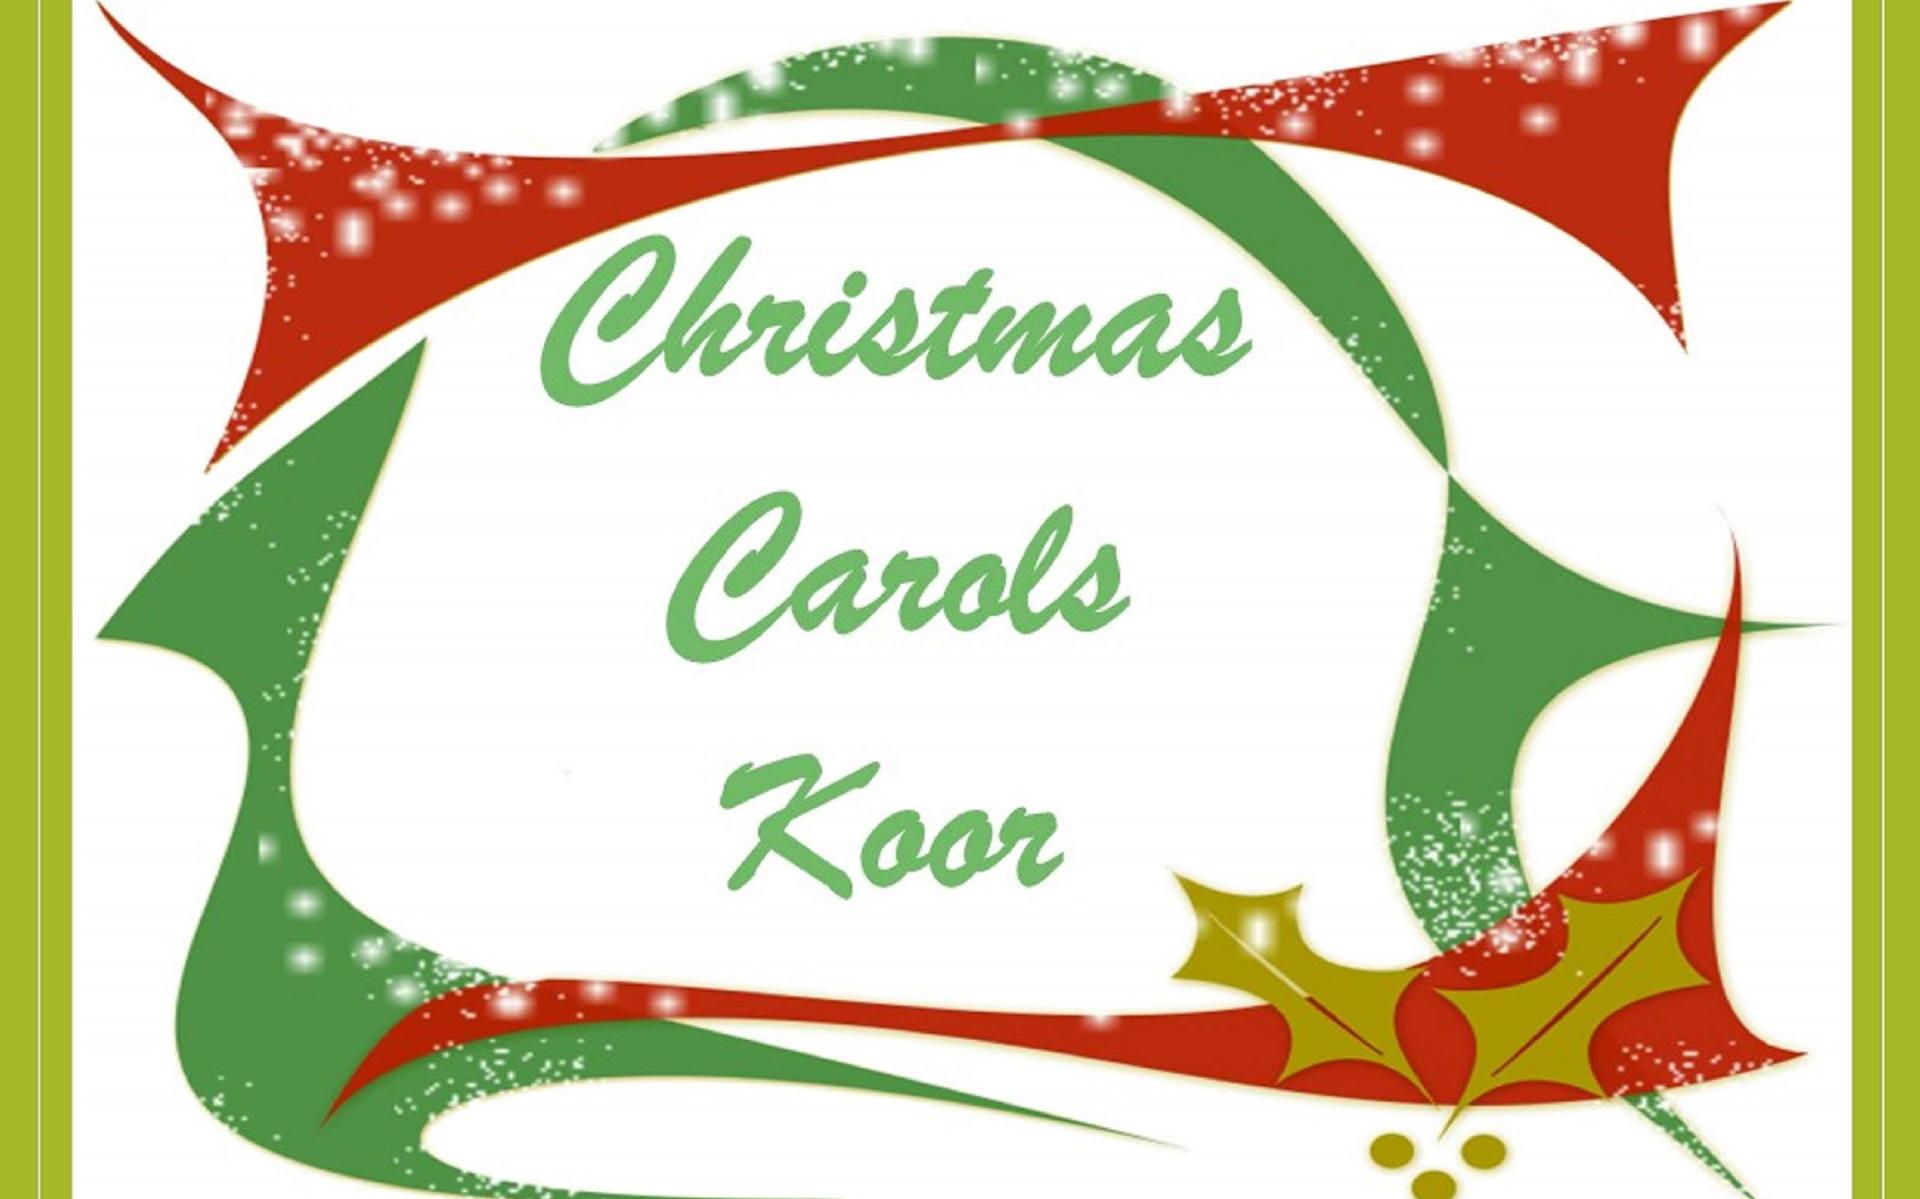 Twee concerten van  Christmas Carols Koor.